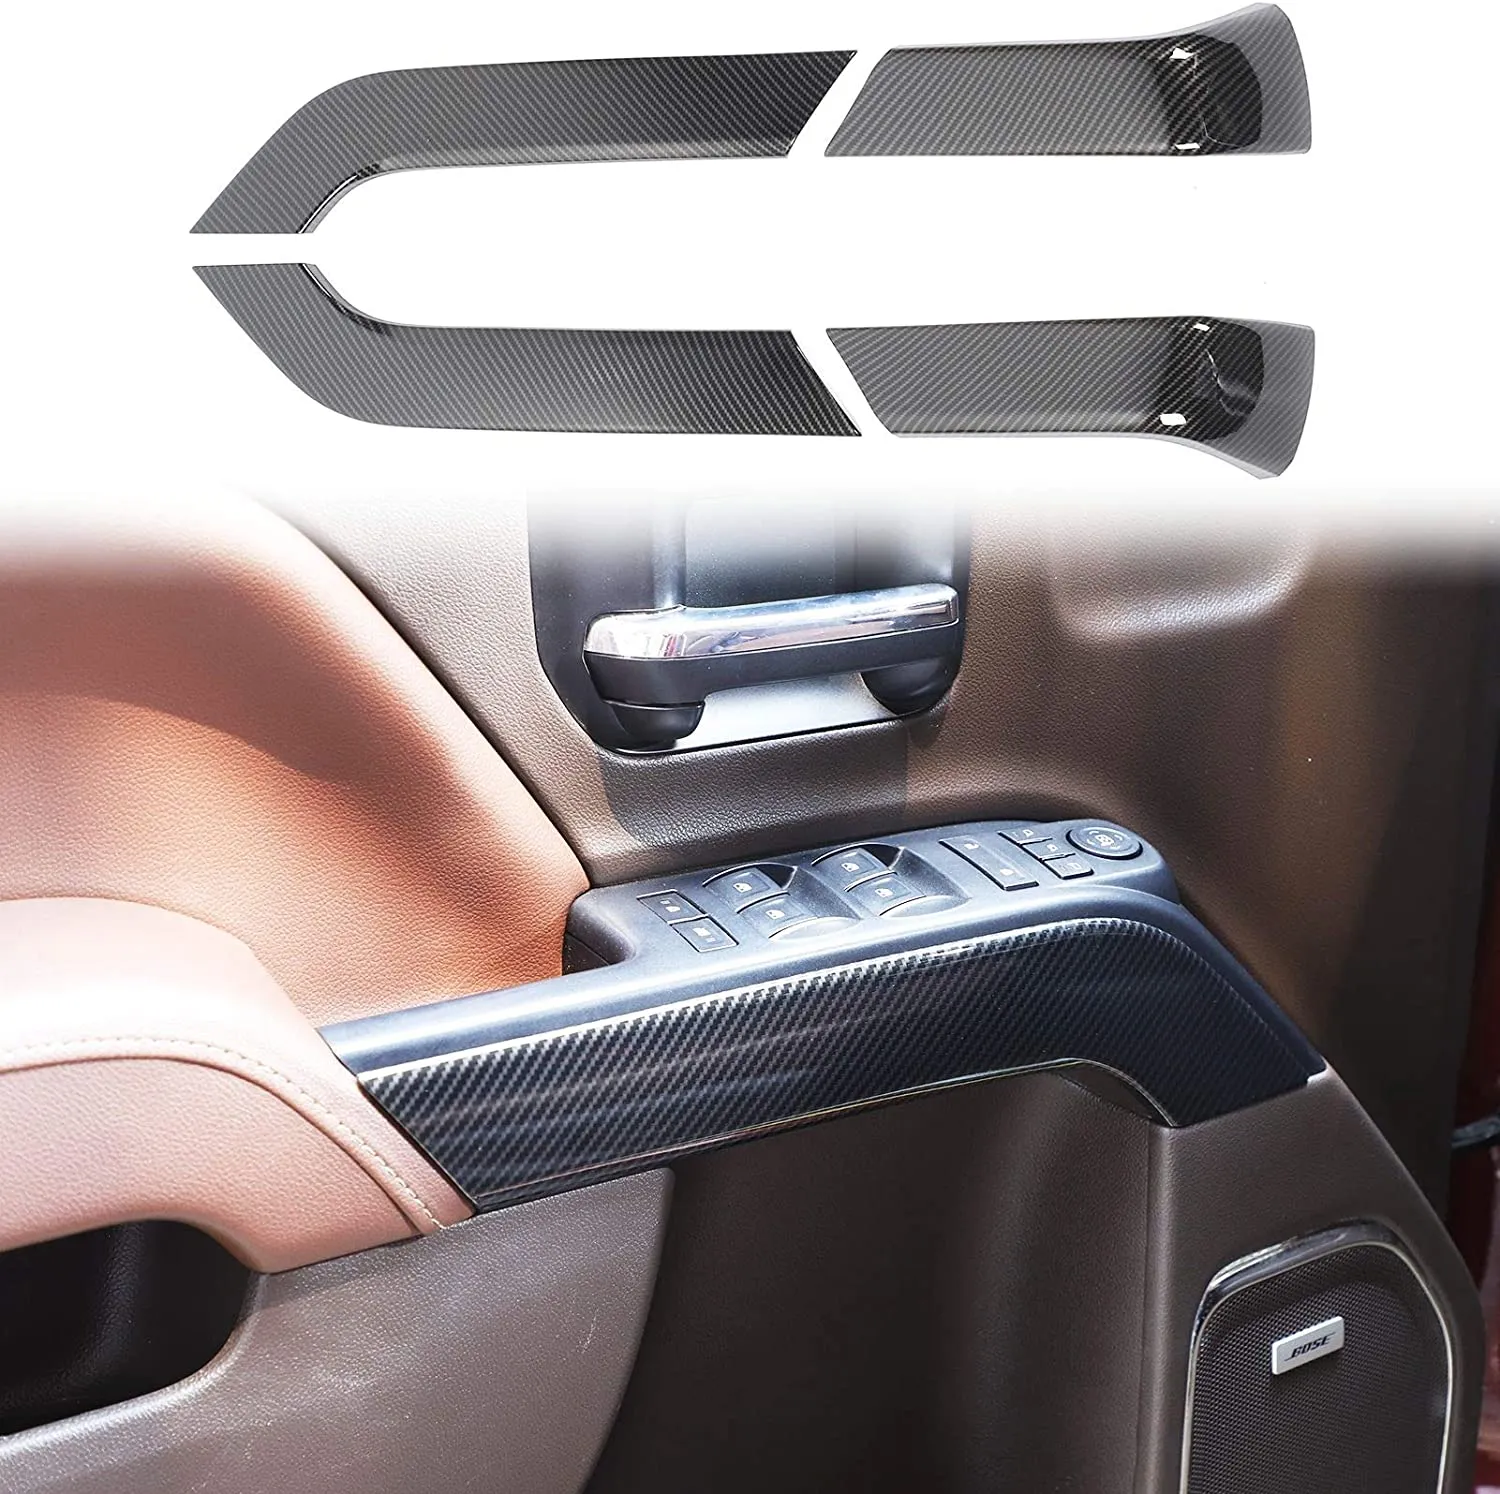 مقبض الباب الداخلي تقليم الملحقات، ABS ألياف الكربون 4 قطع لشفروليه سيلفرادو GMC Sierra 2014-2018 اكسسوارات الداخلية